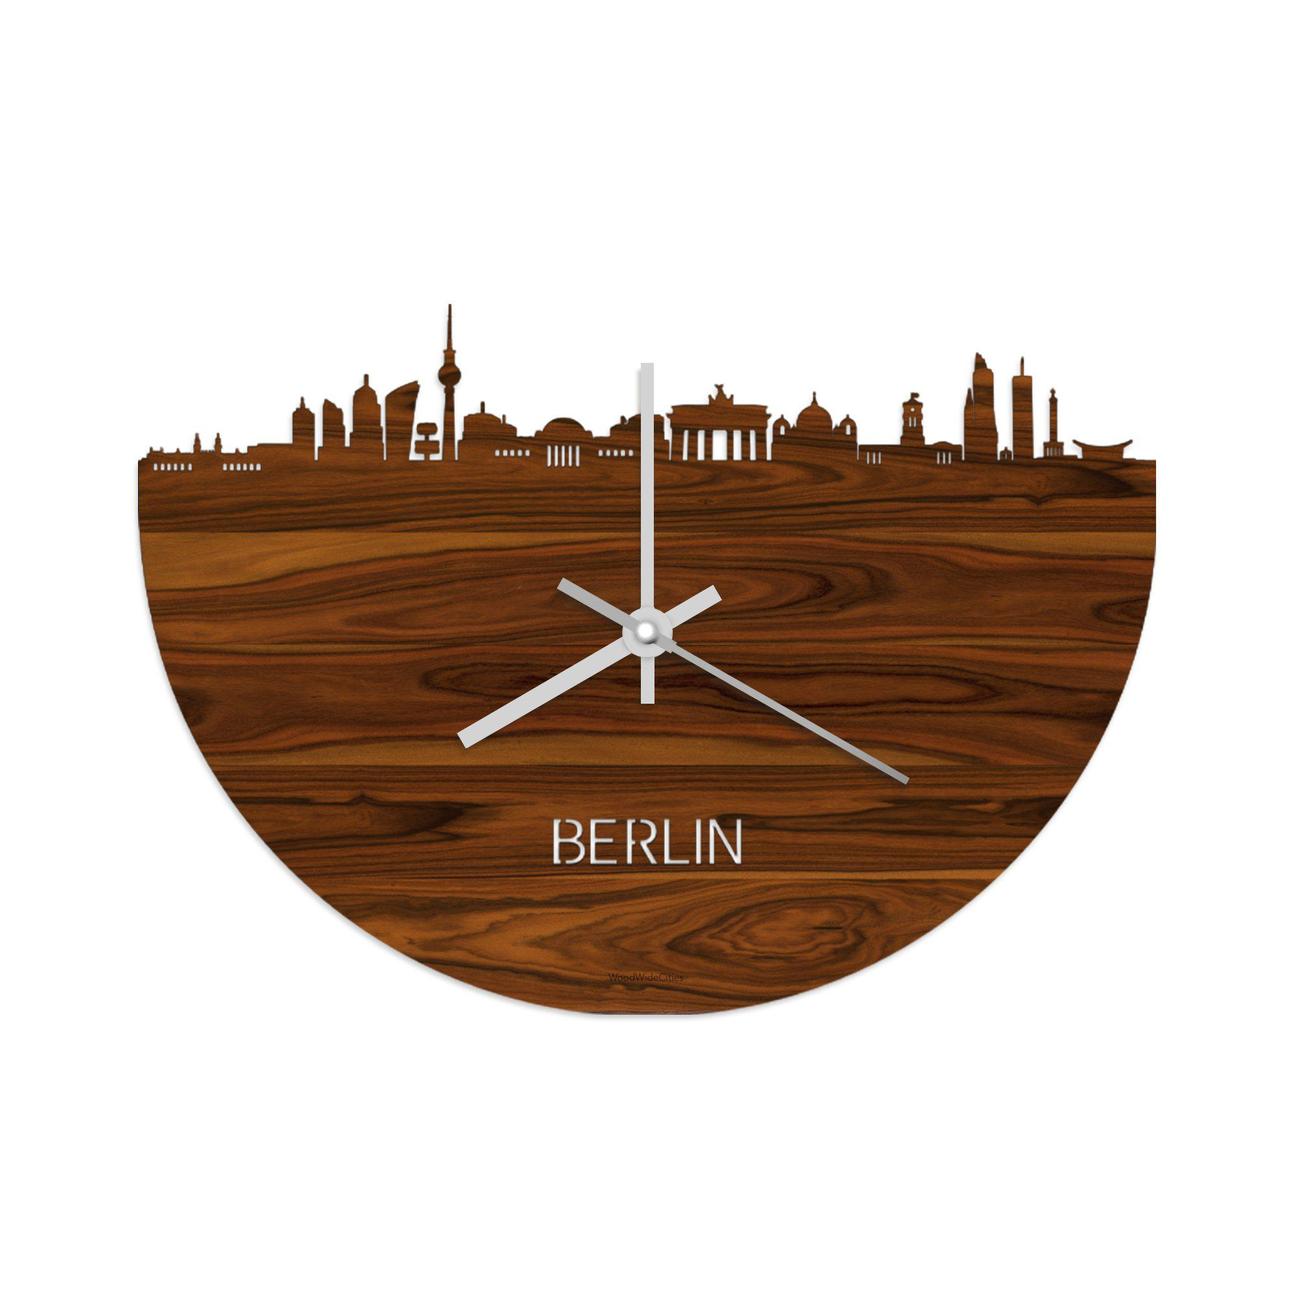 Gedachte Echt Wijden Skyline Klok Berlijn - House of Bamboo